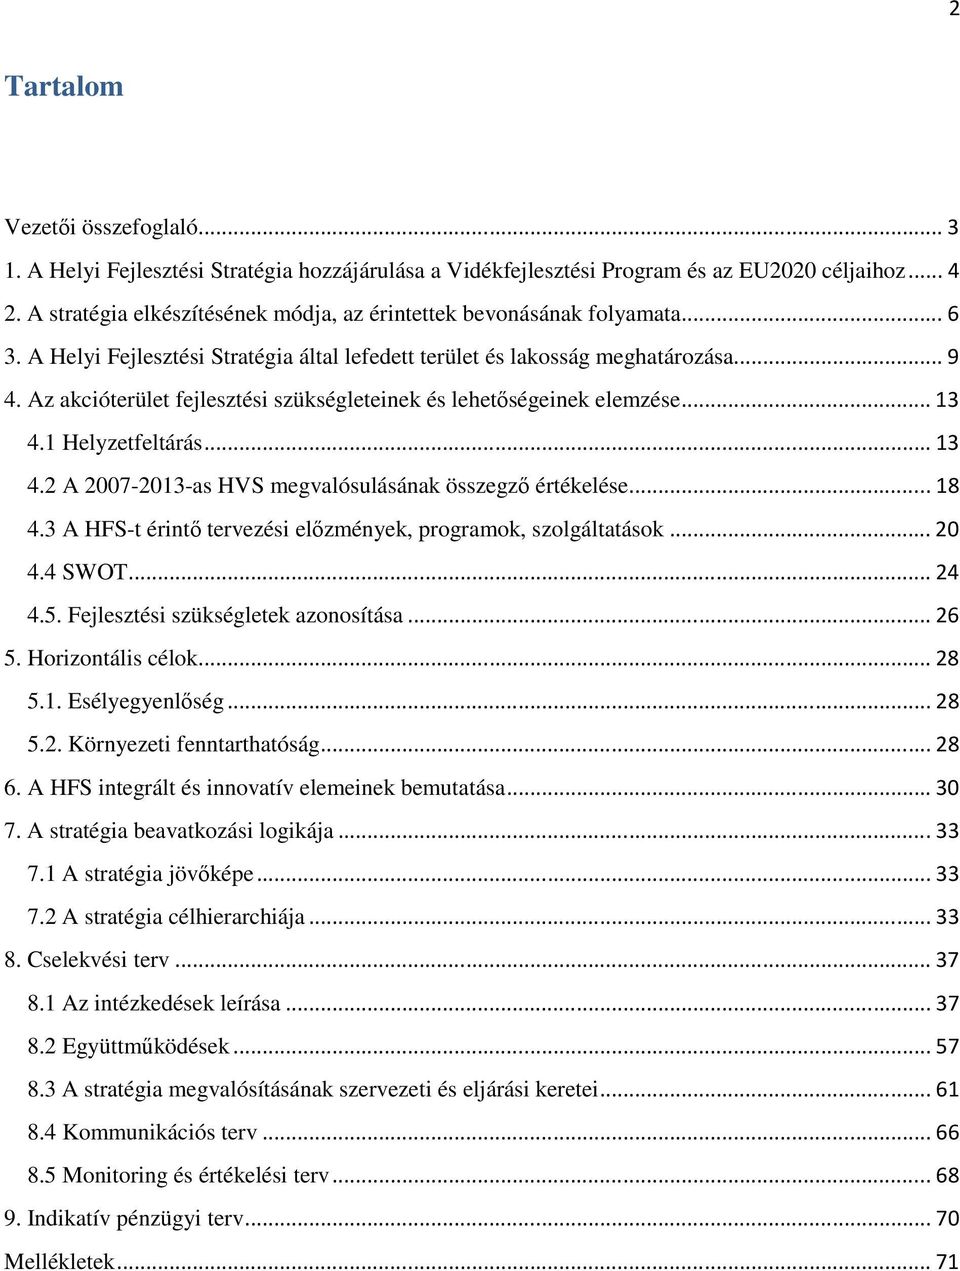 Az akcióterület fejlesztési szükségleteinek és lehetıségeinek elemzése... 13 4.1 Helyzetfeltárás... 13 4.2 A 2007-2013-as HVS megvalósulásának összegzı értékelése... 18 4.